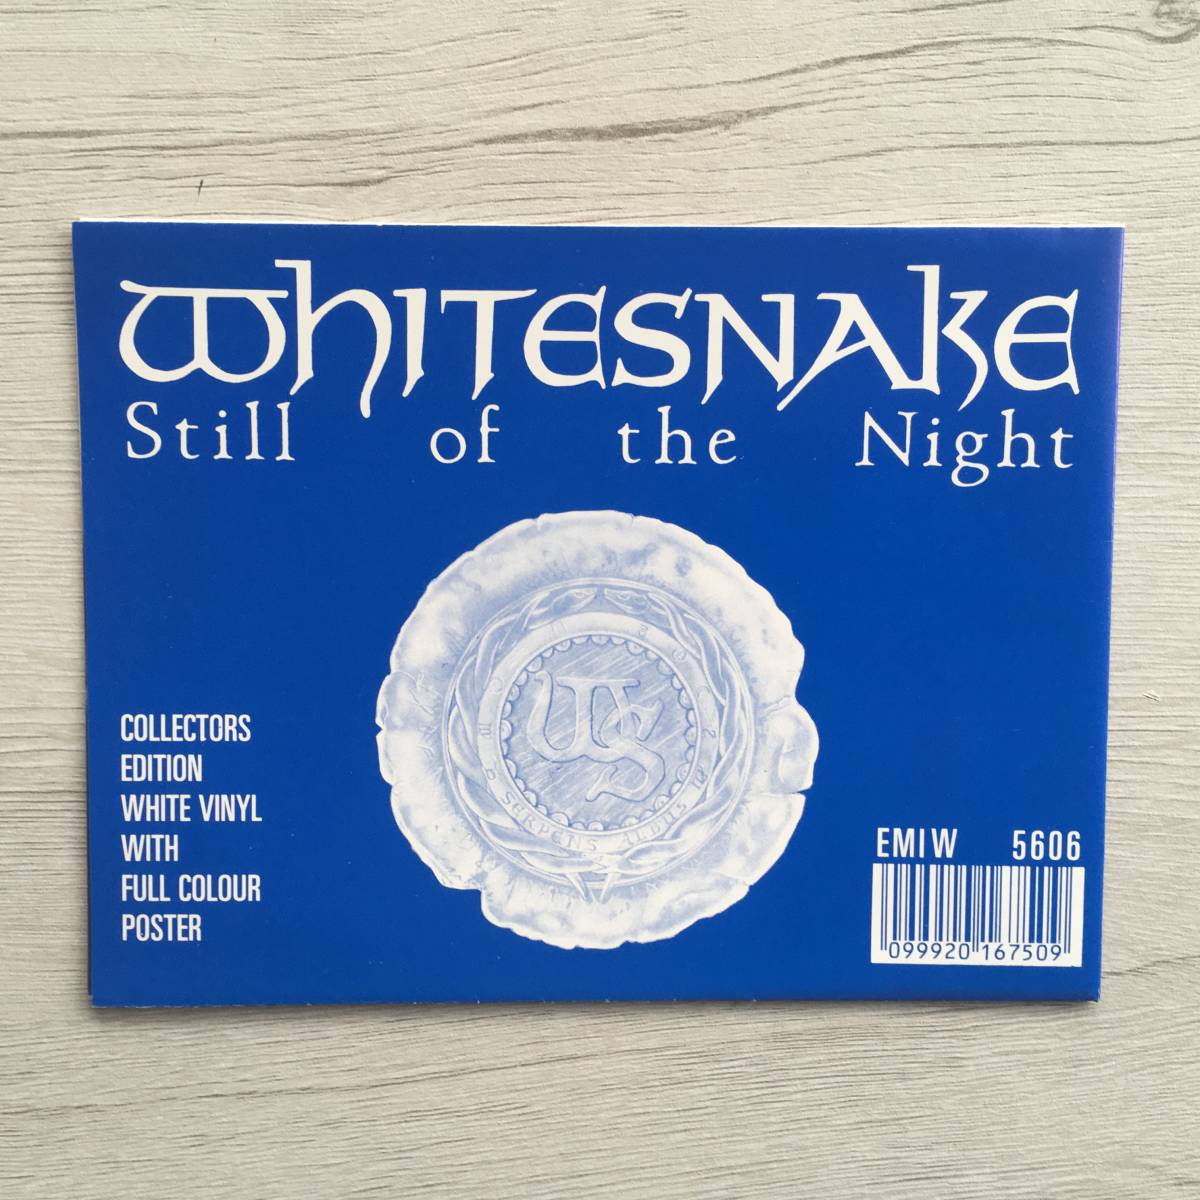 Whitesnake Still of the Night UK